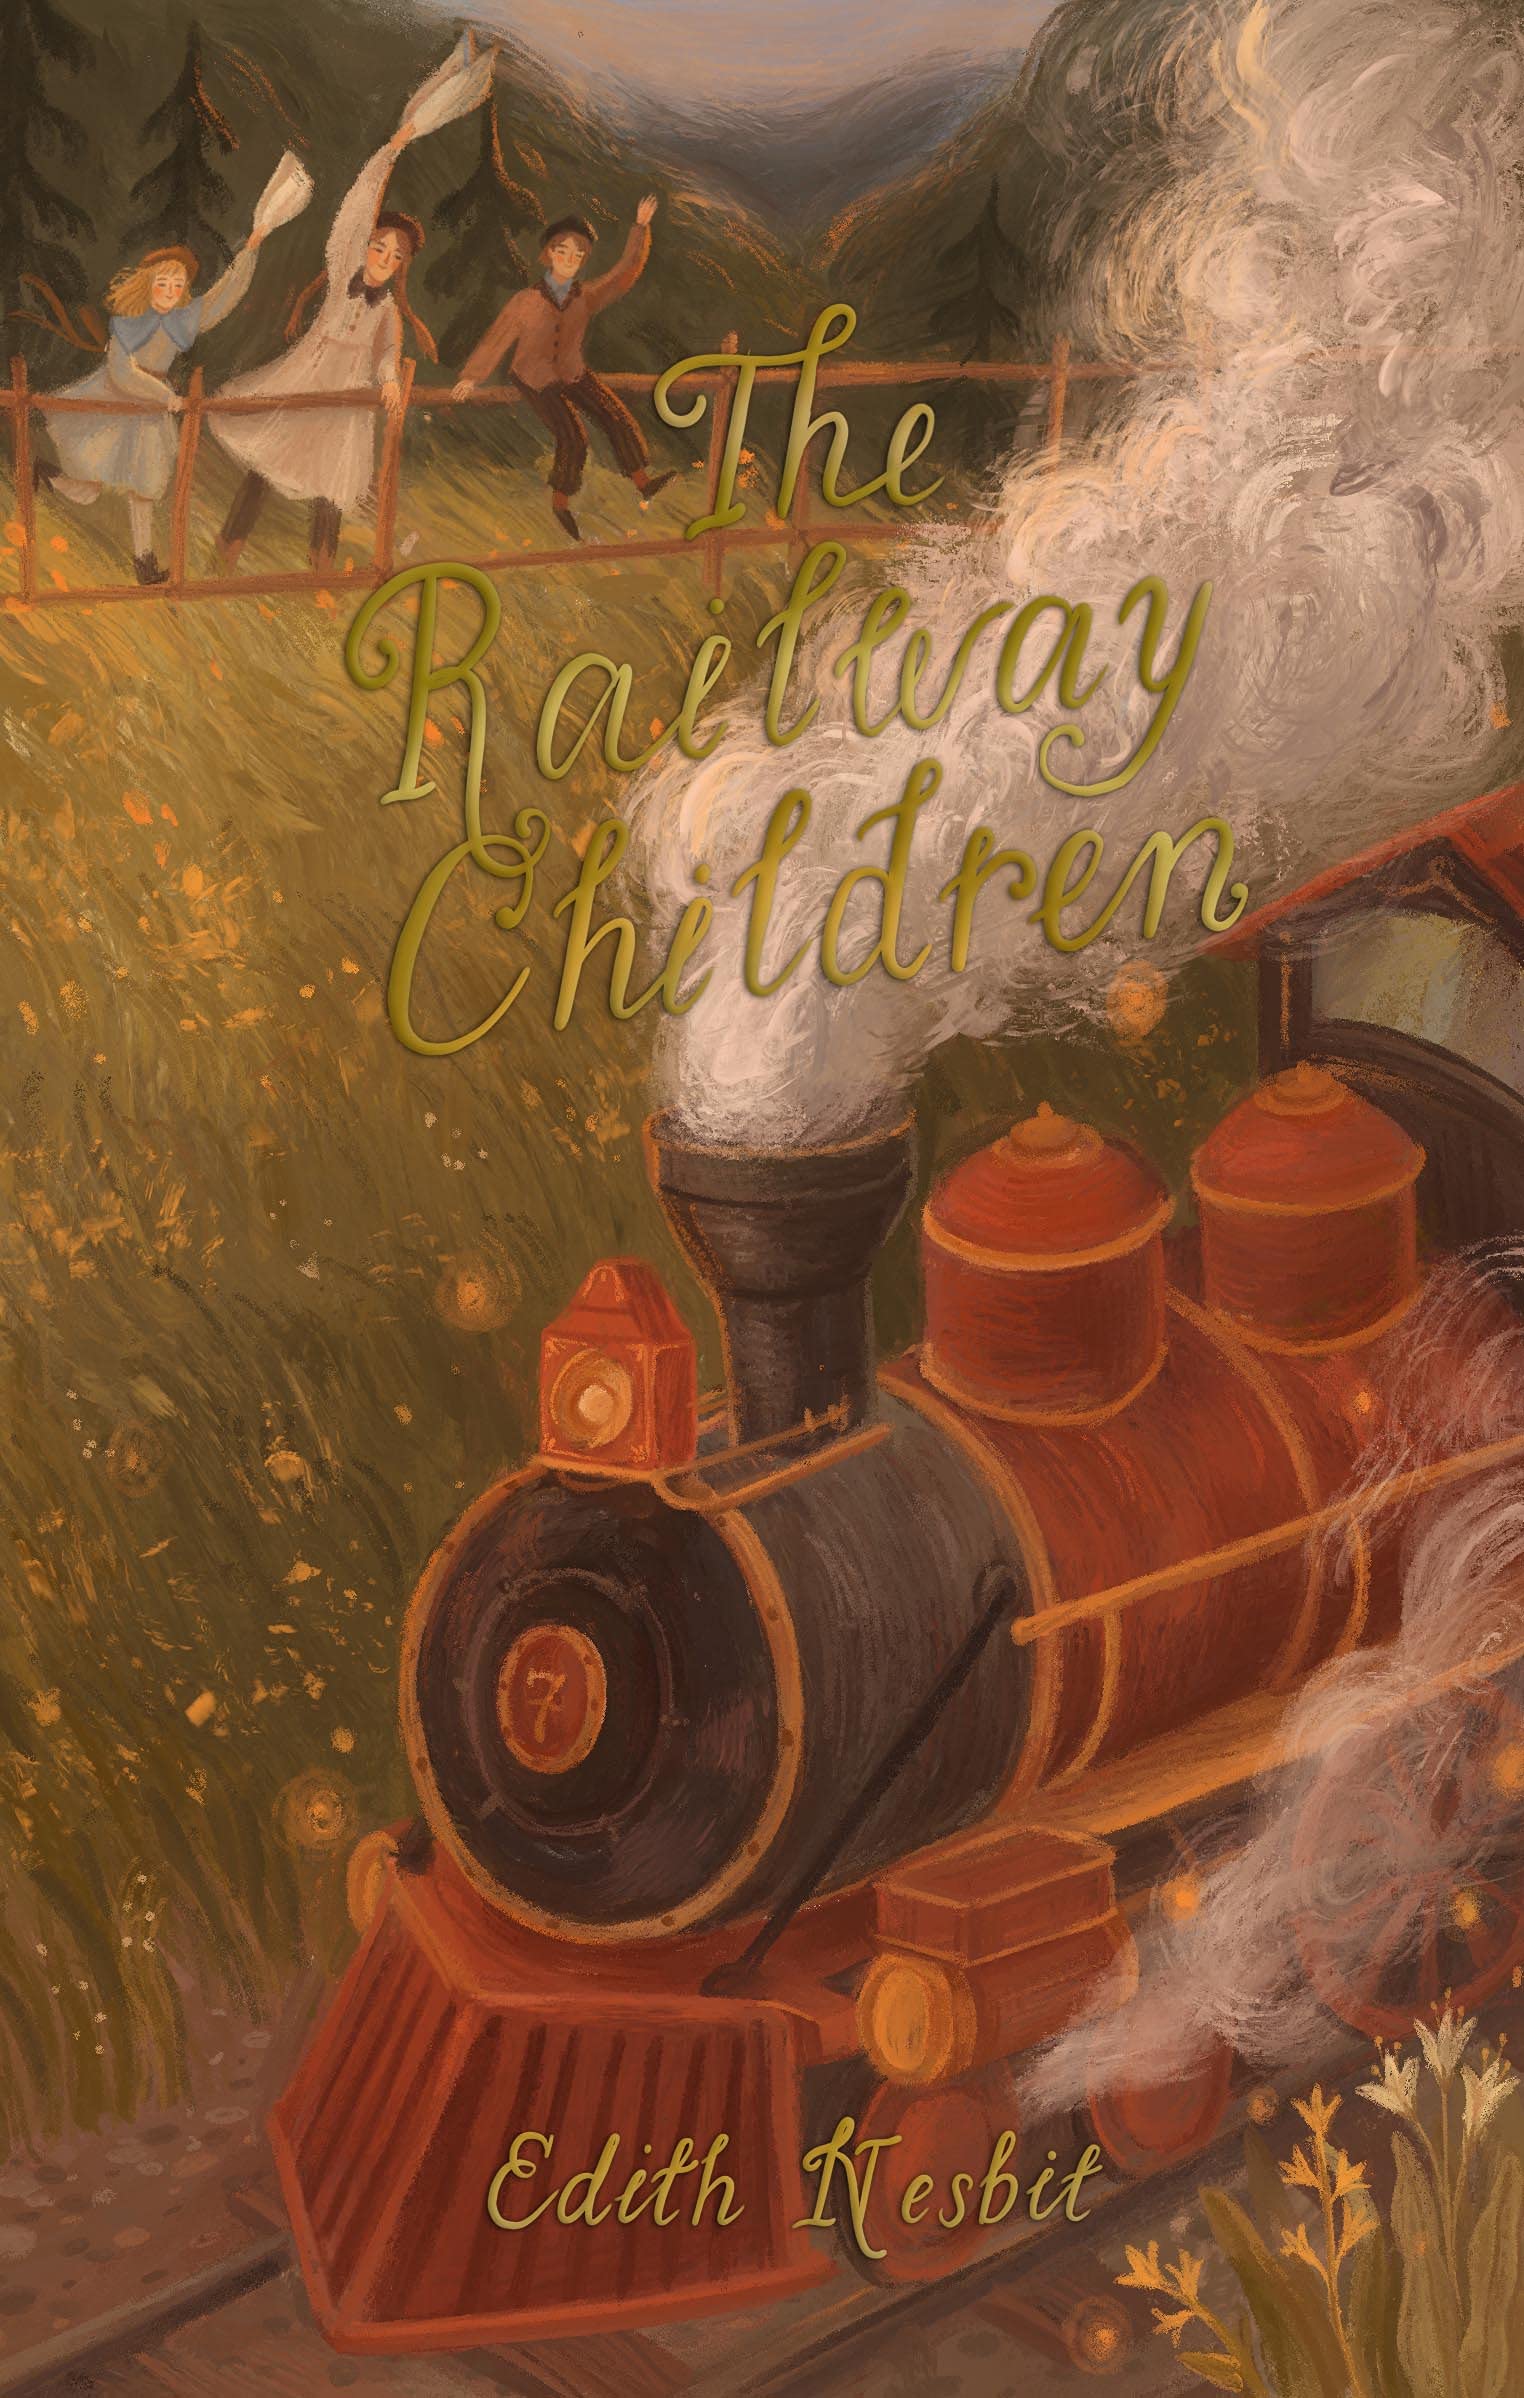 The Railway Children | E. Nesbit